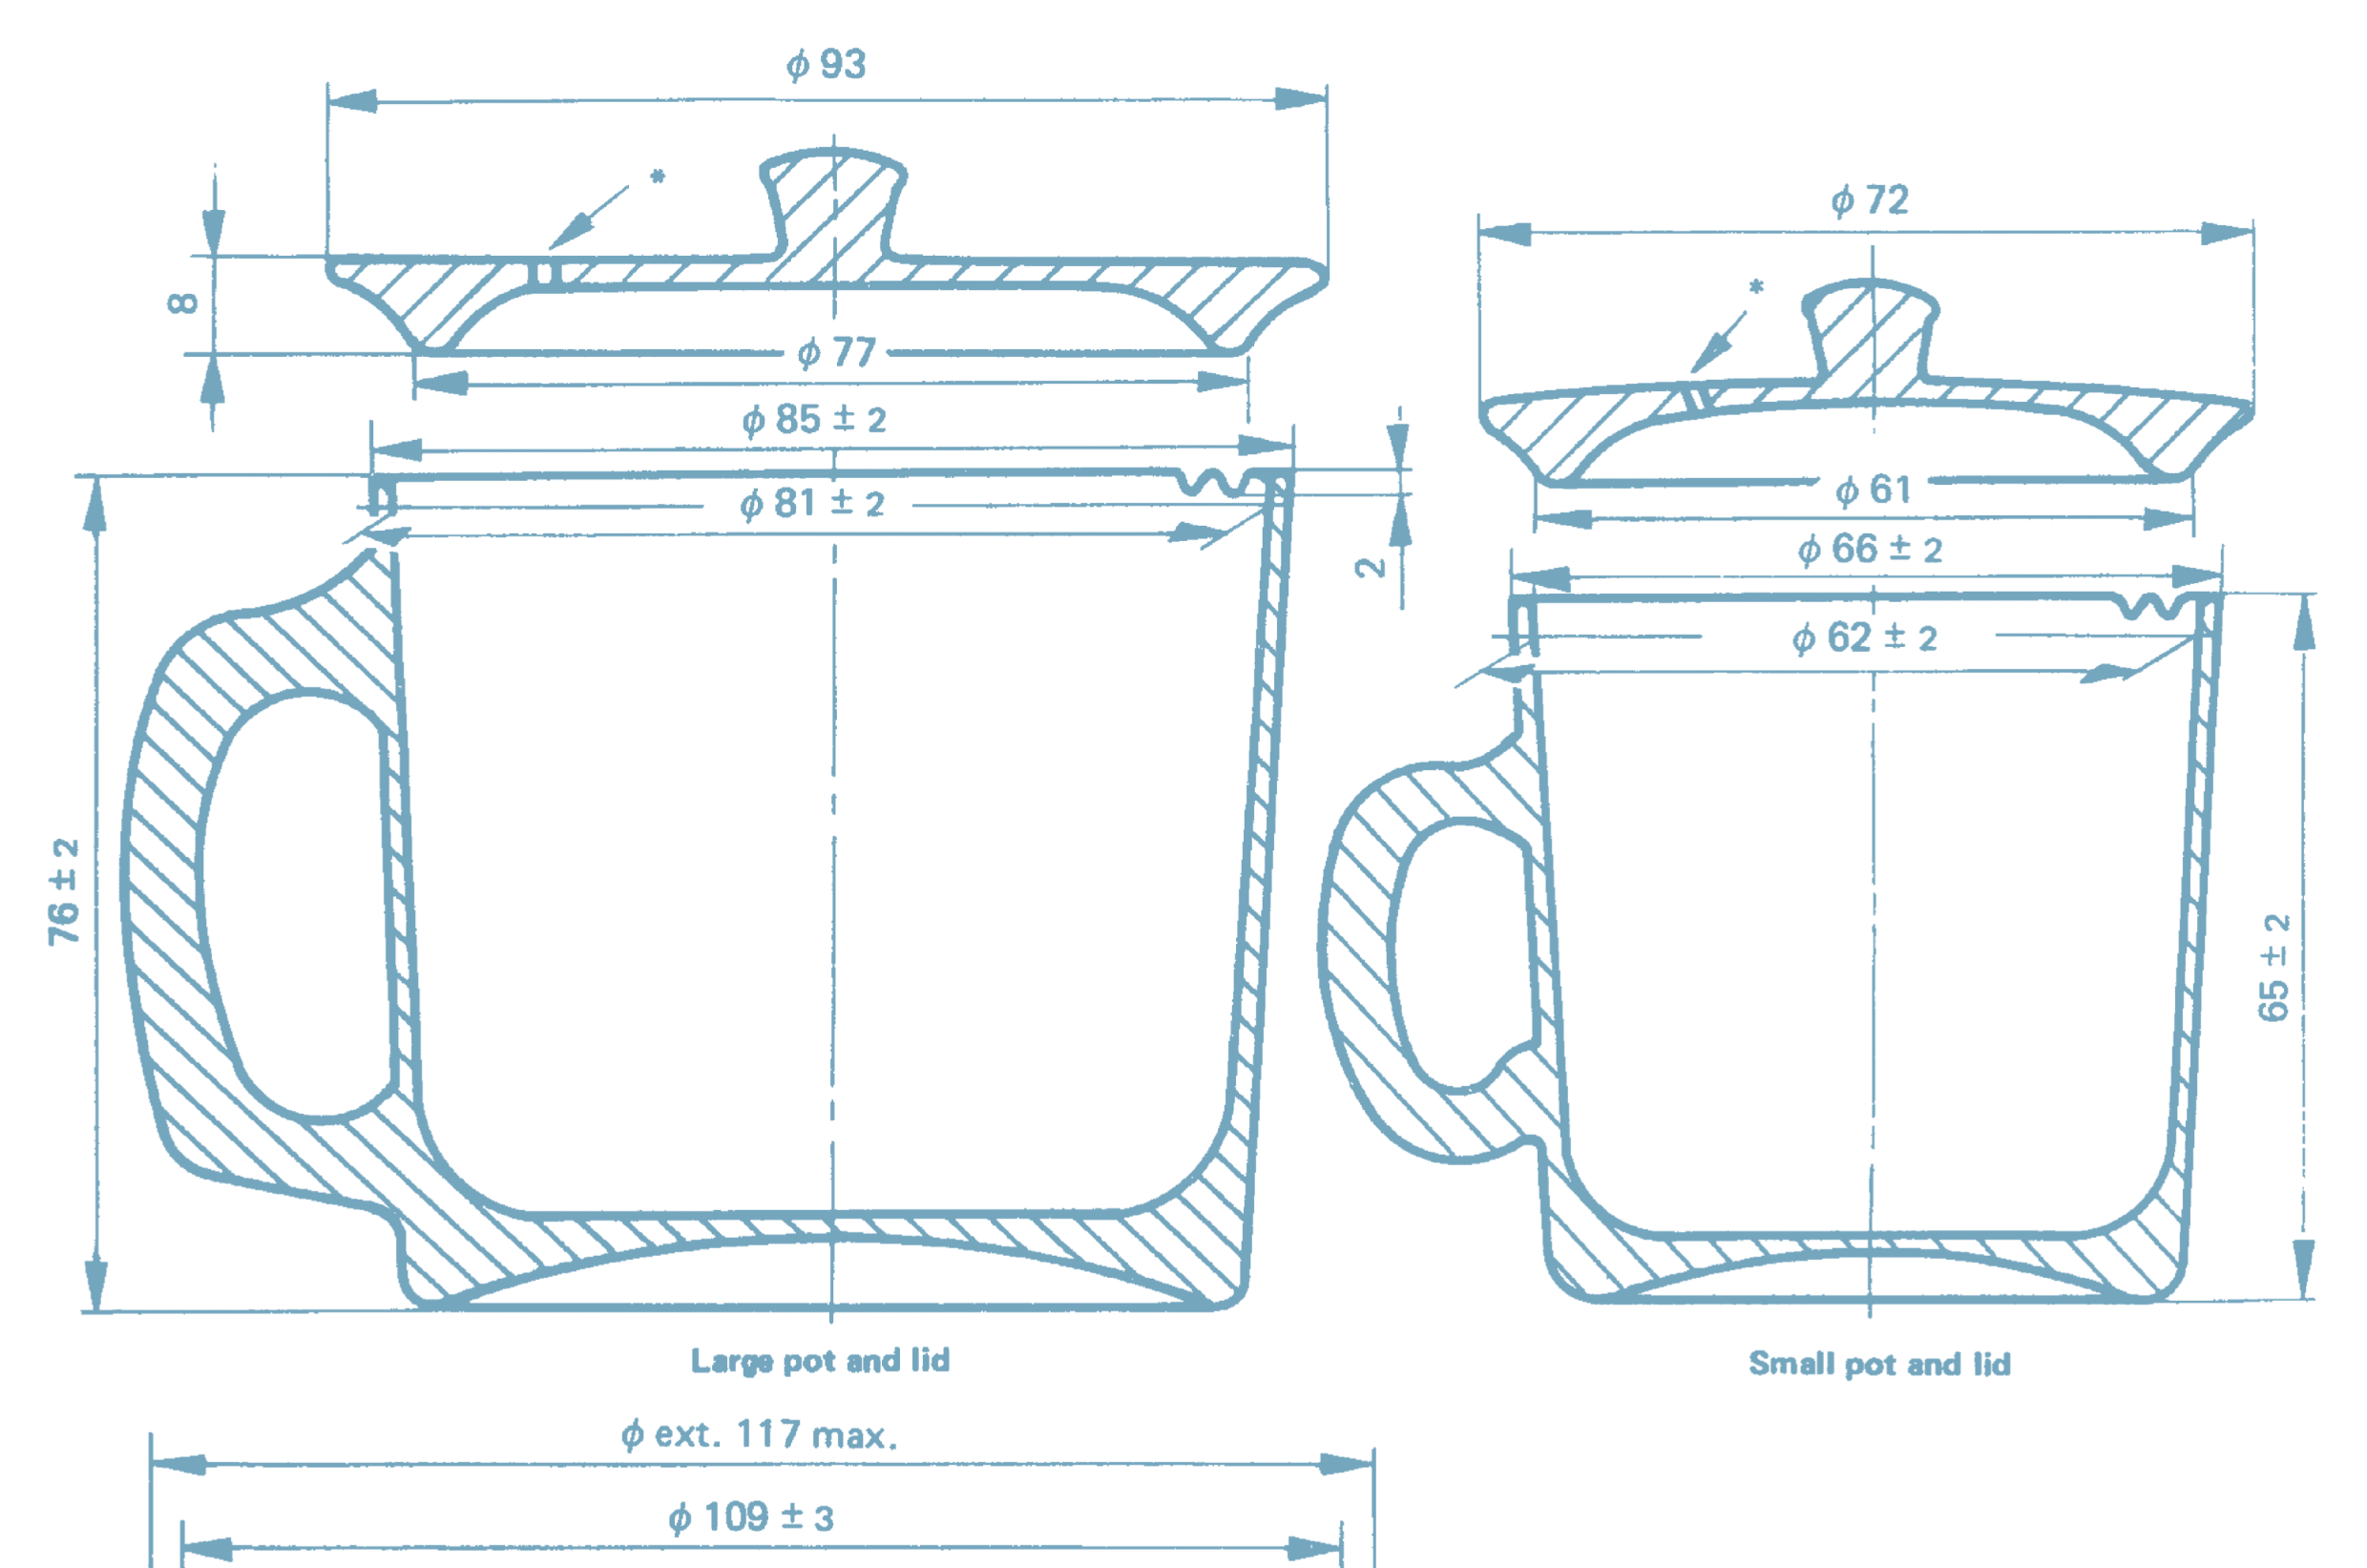 Diagram of the standard spot for making tea liquor for tasting